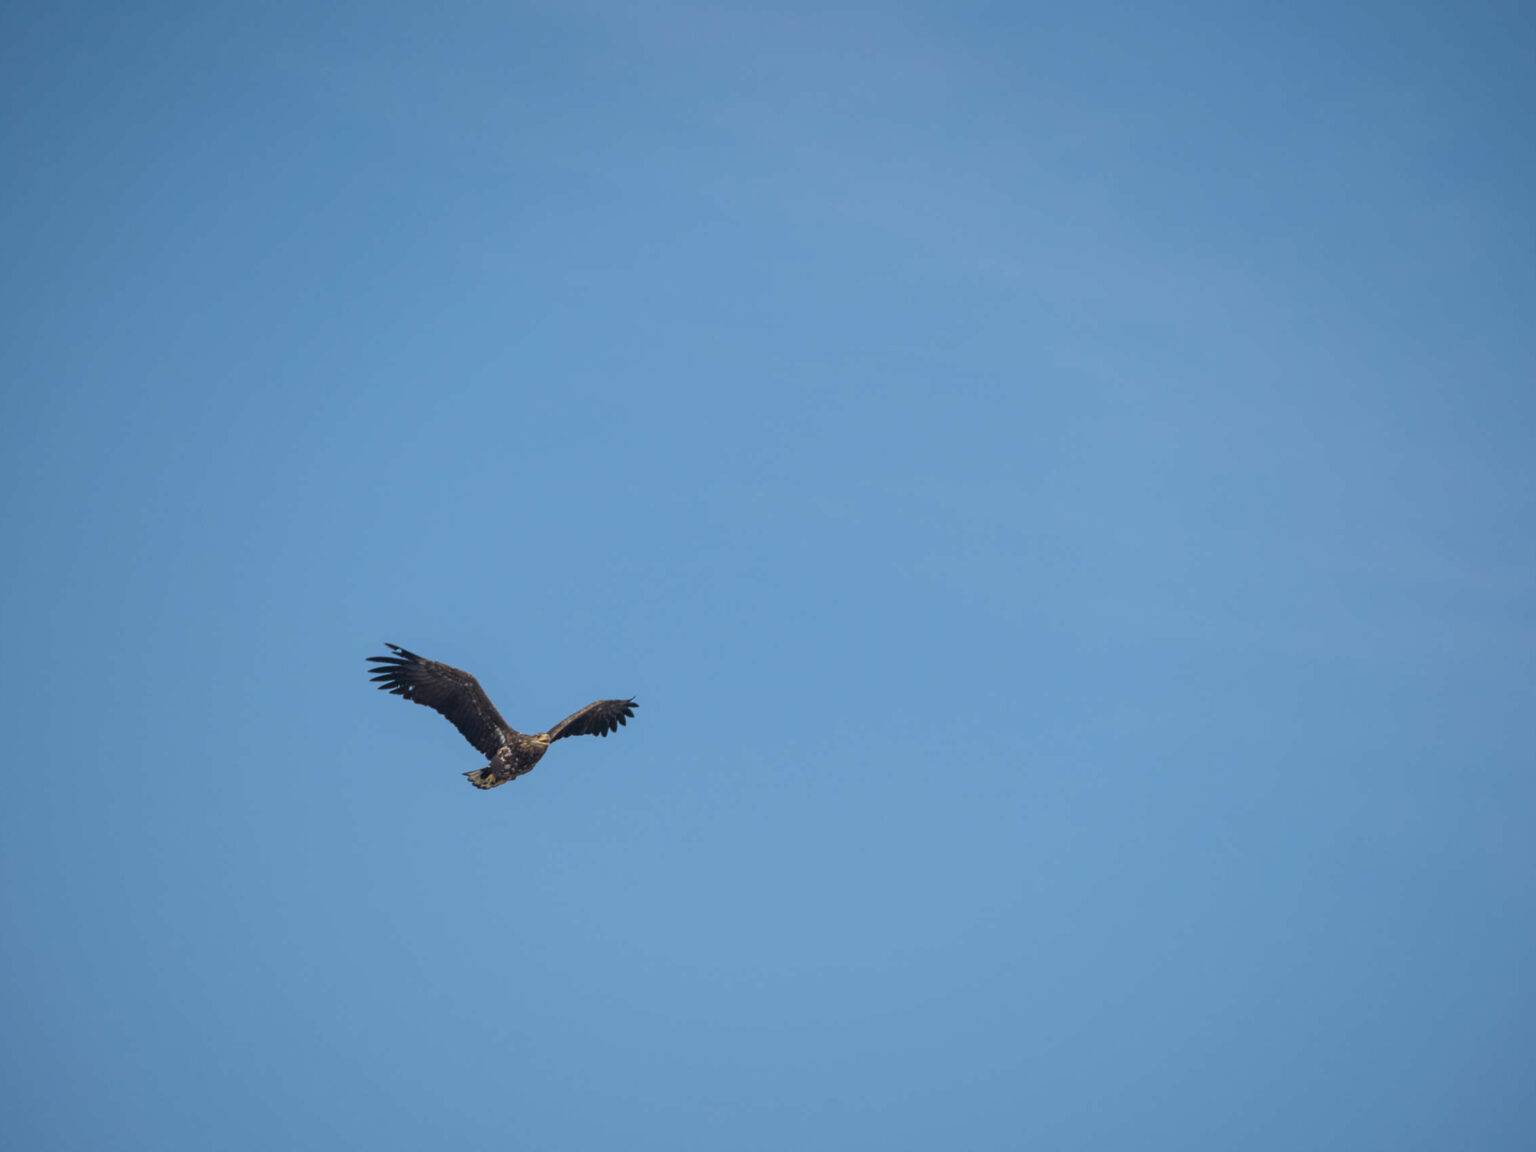 Am strahlend blauen wolkenlosen Himmel fliegt mit gespreizten Flügeln ein schwarzer Seeadler